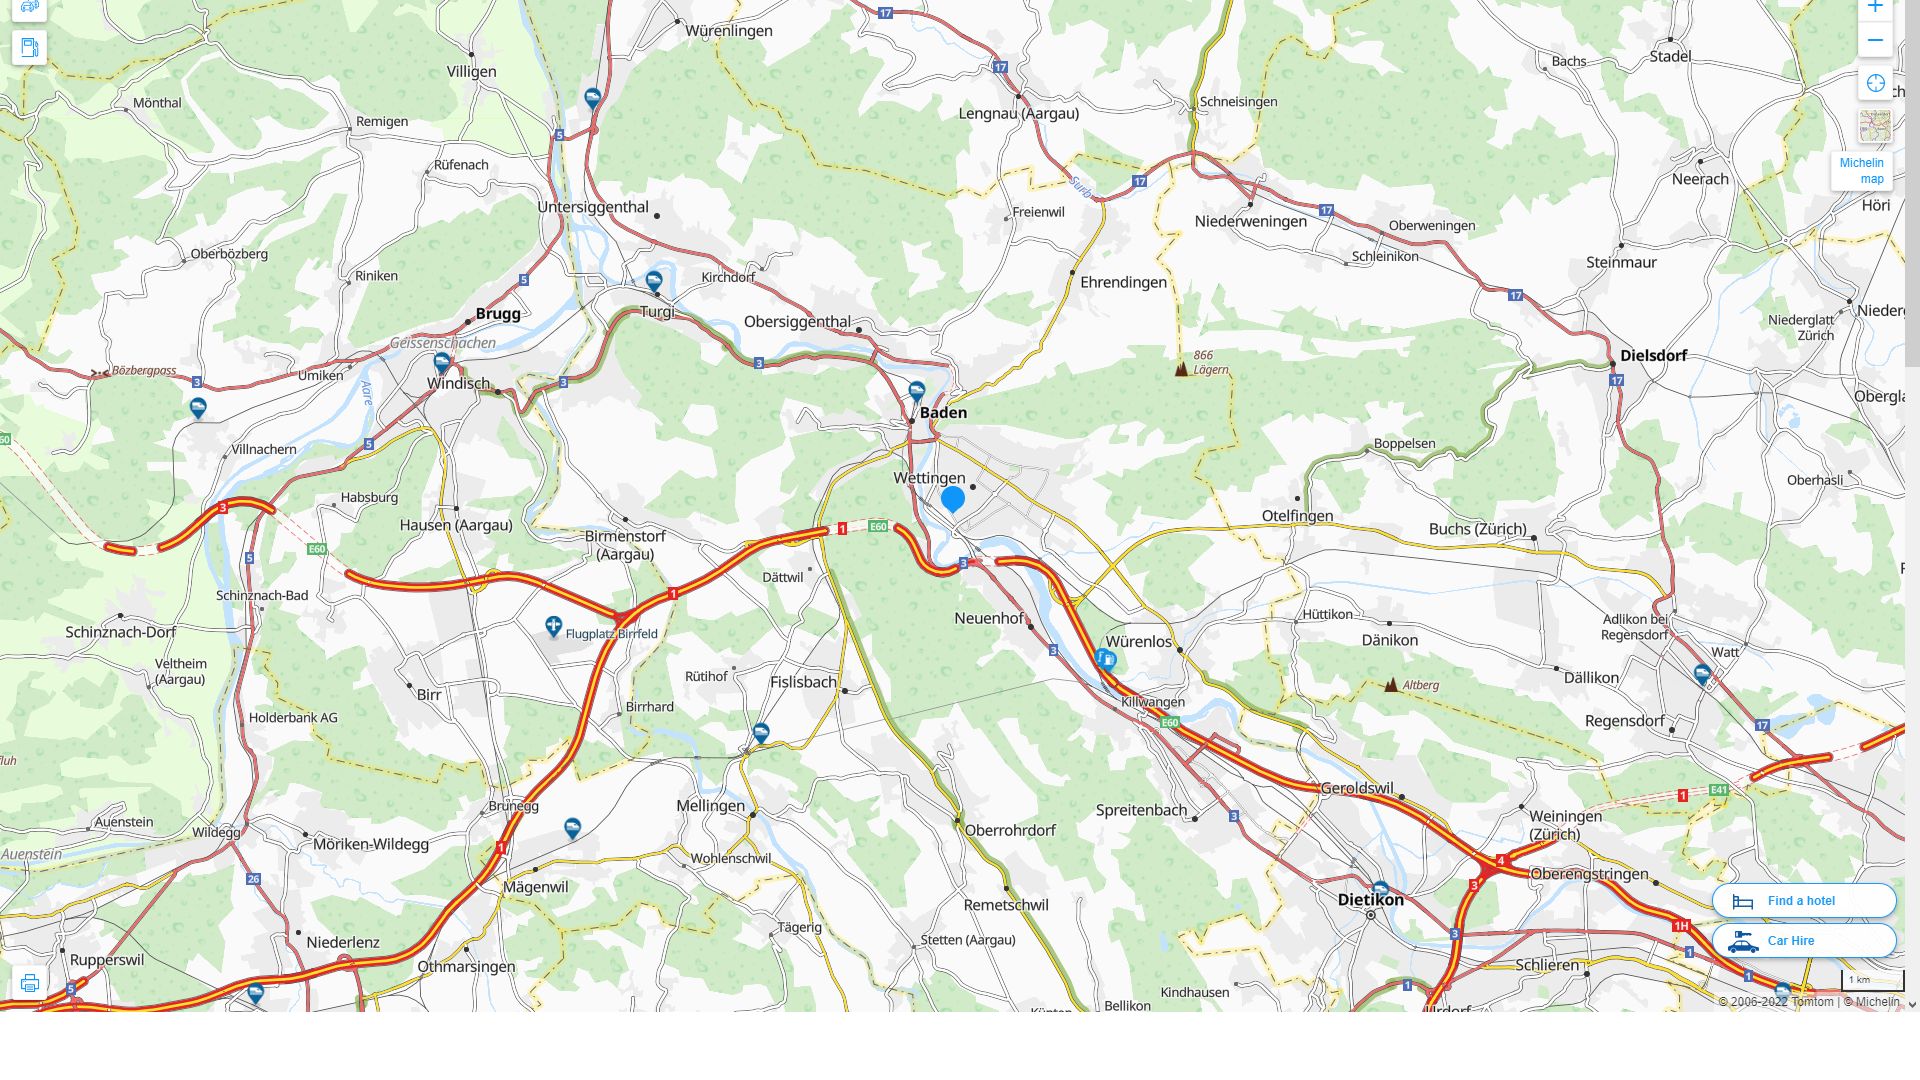 Wettingen Highway and Road Map